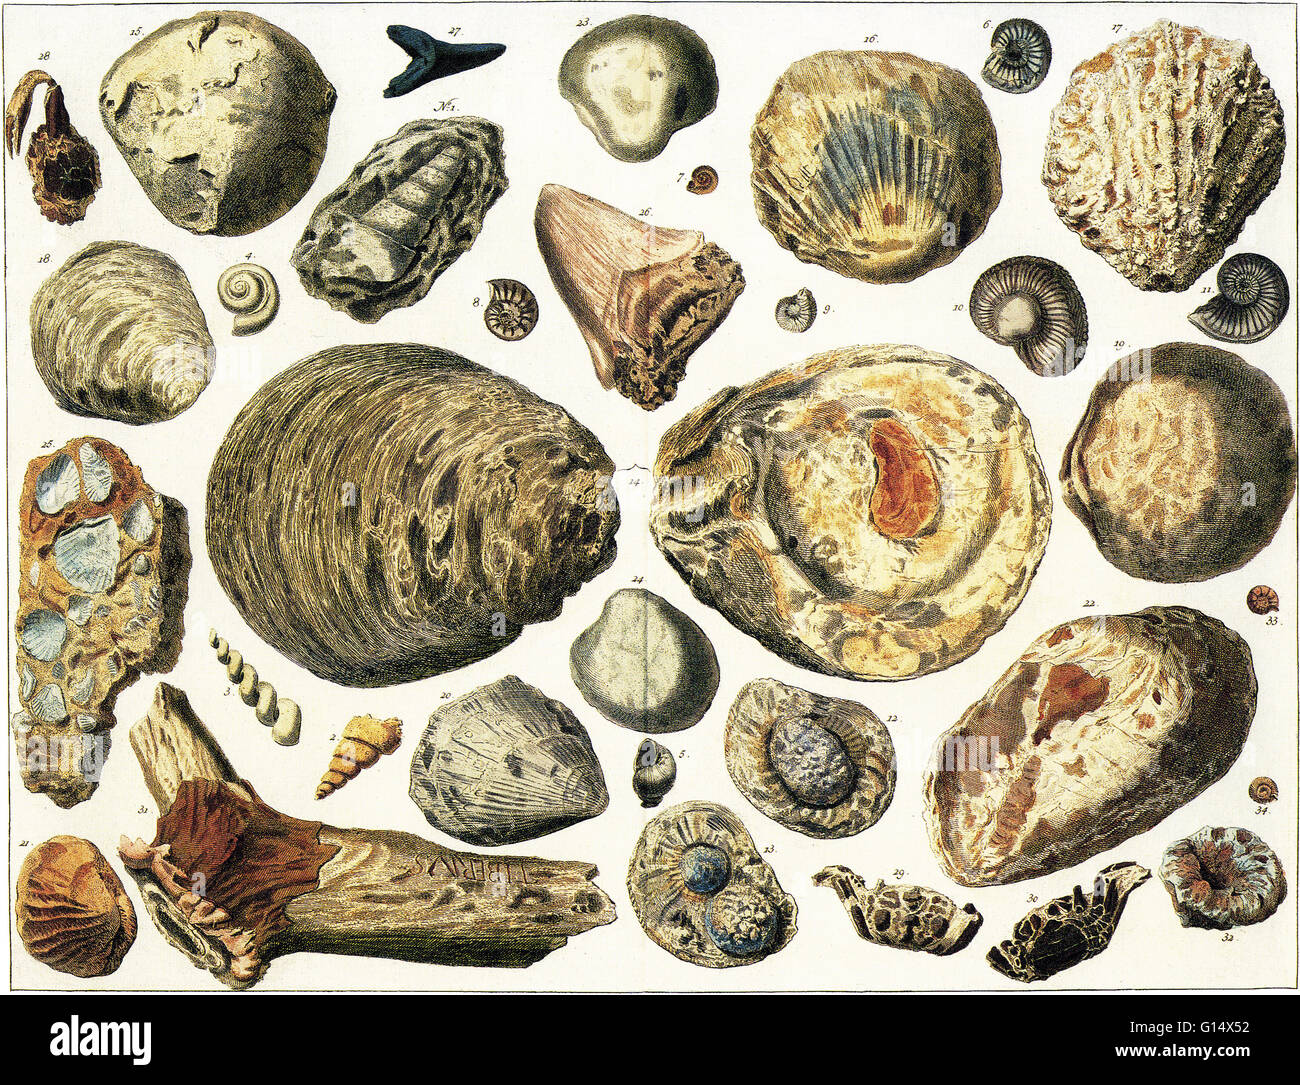 Illustration de coquilles marines pétrifiées et autres fossiles, en grande partie l'objet de fouilles en Allemagne. Banque D'Images